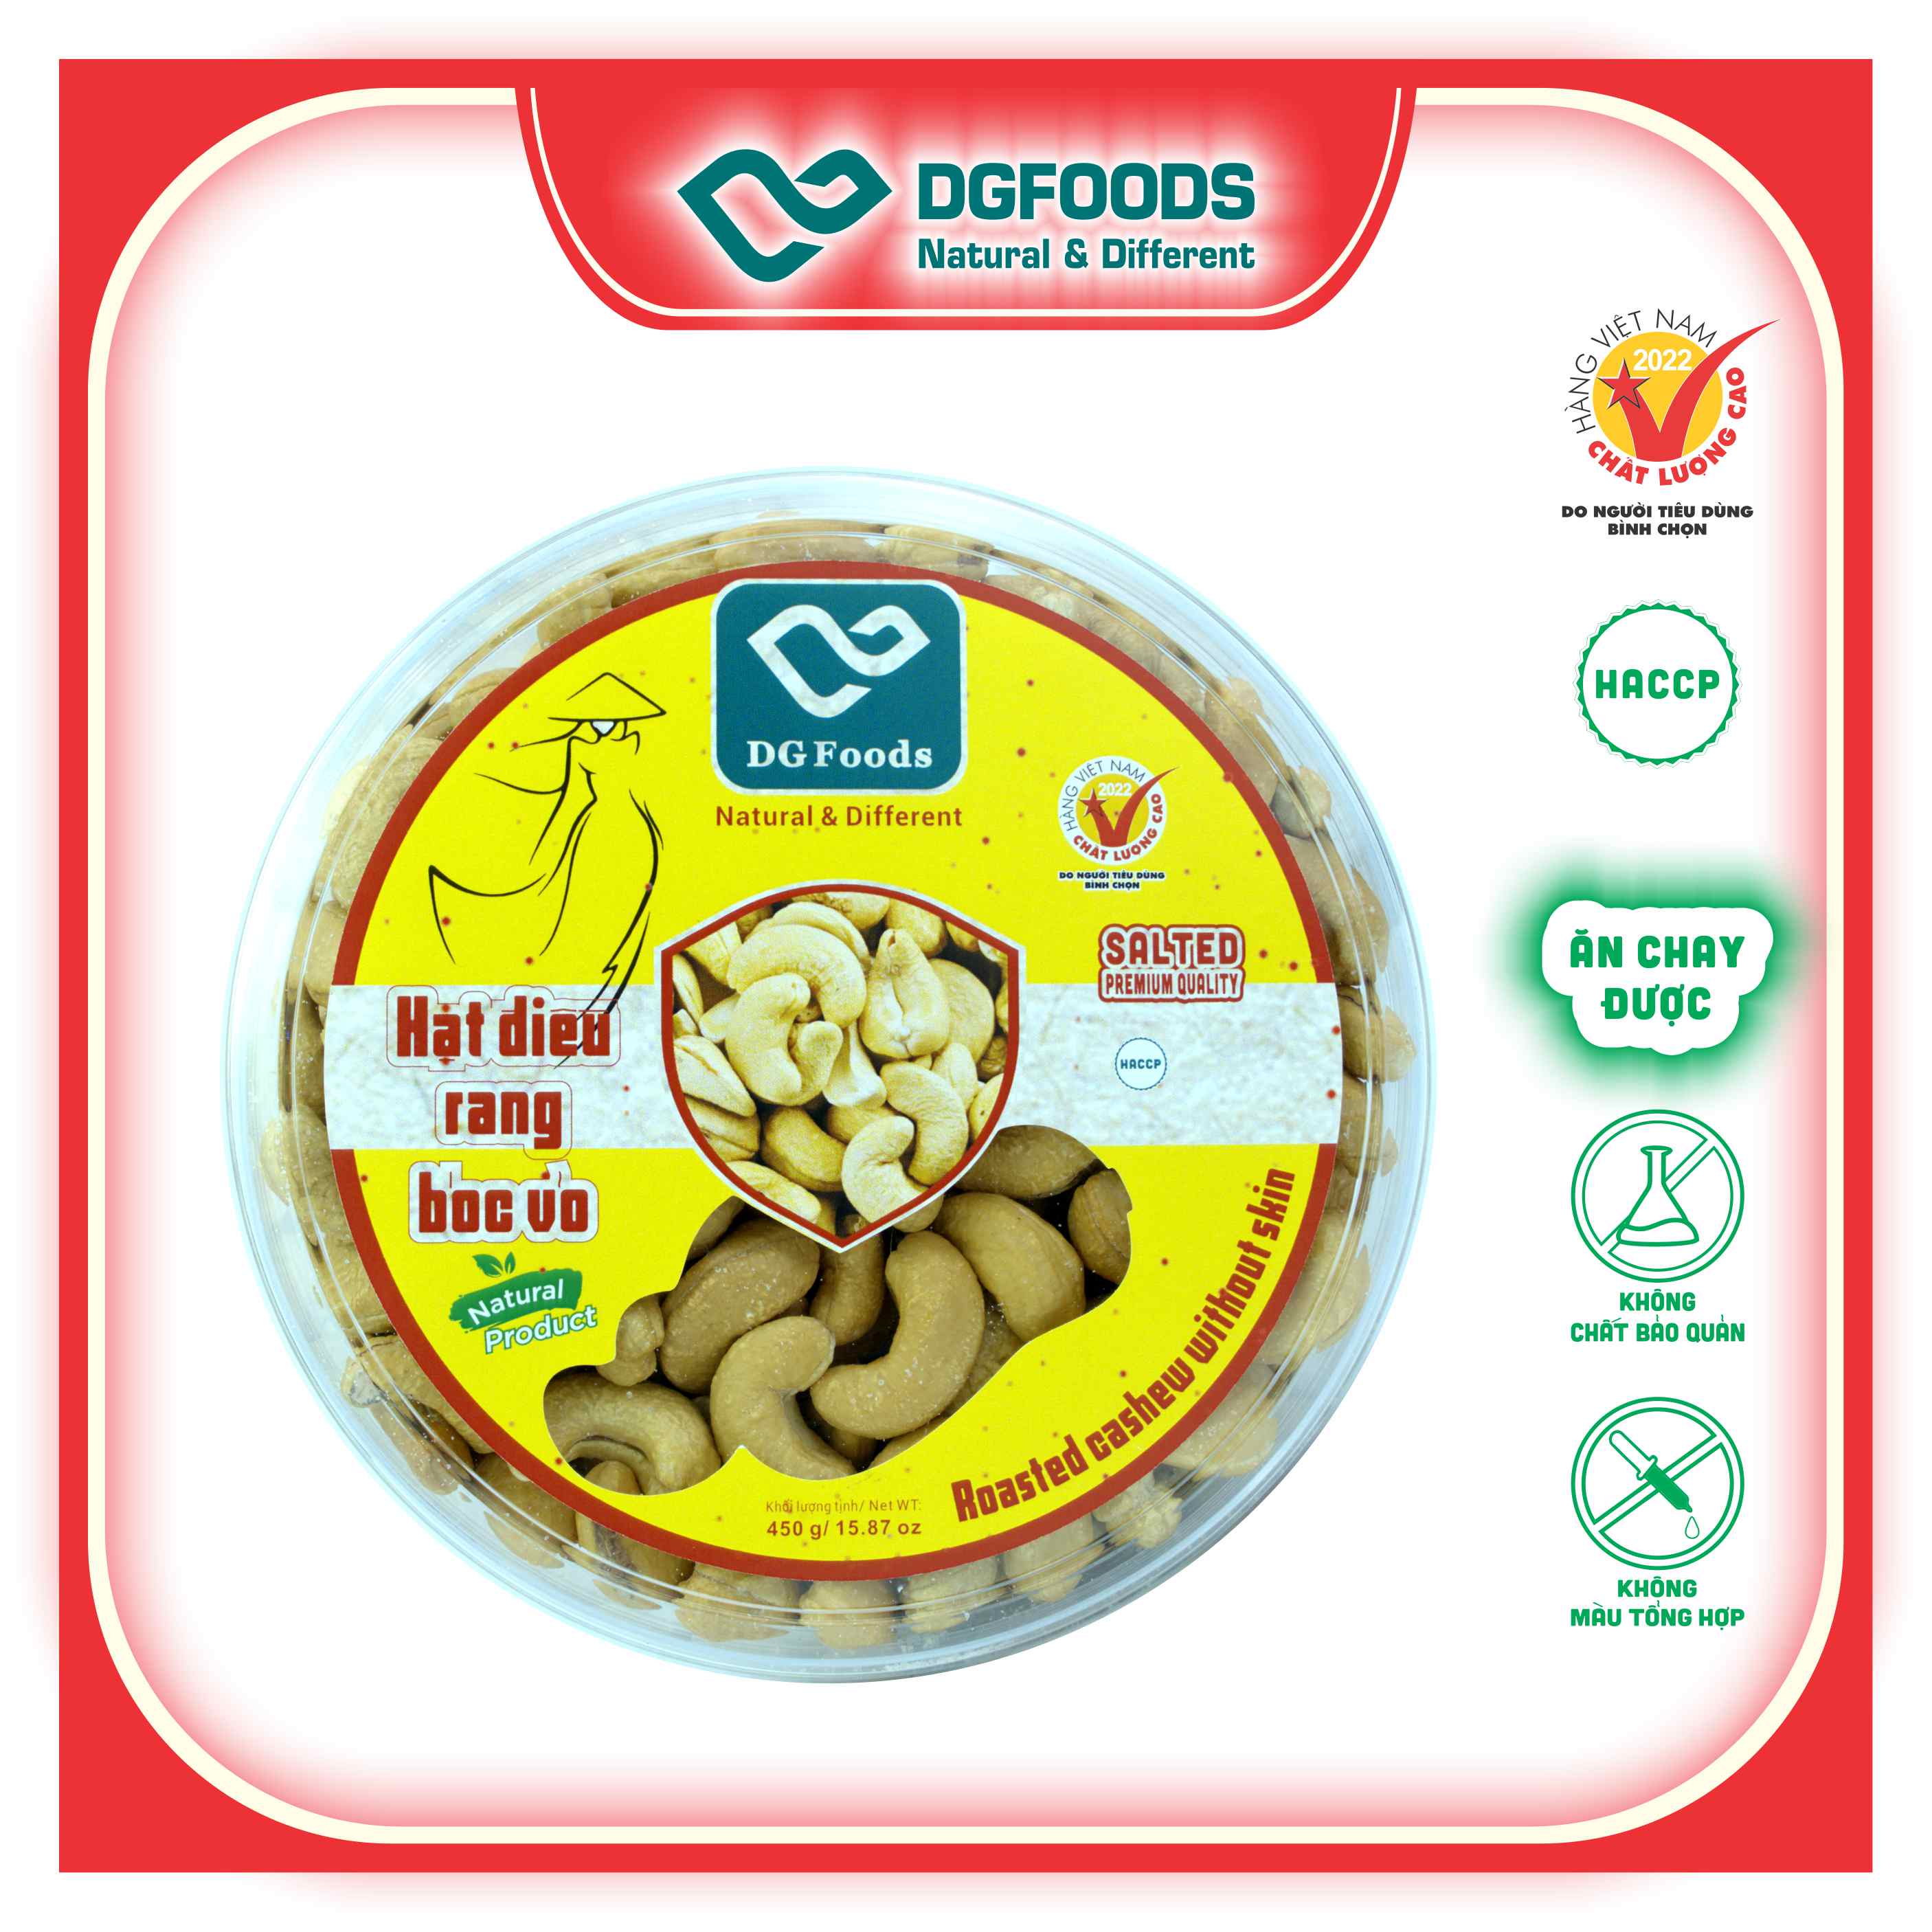 Hạt điều rang bóc vỏ 450g DGfoods/Roasted cashew without skin HVNCLCL/HACCP/HALAL/hạt điều bình phước/ Đặc sản Cần Thơ